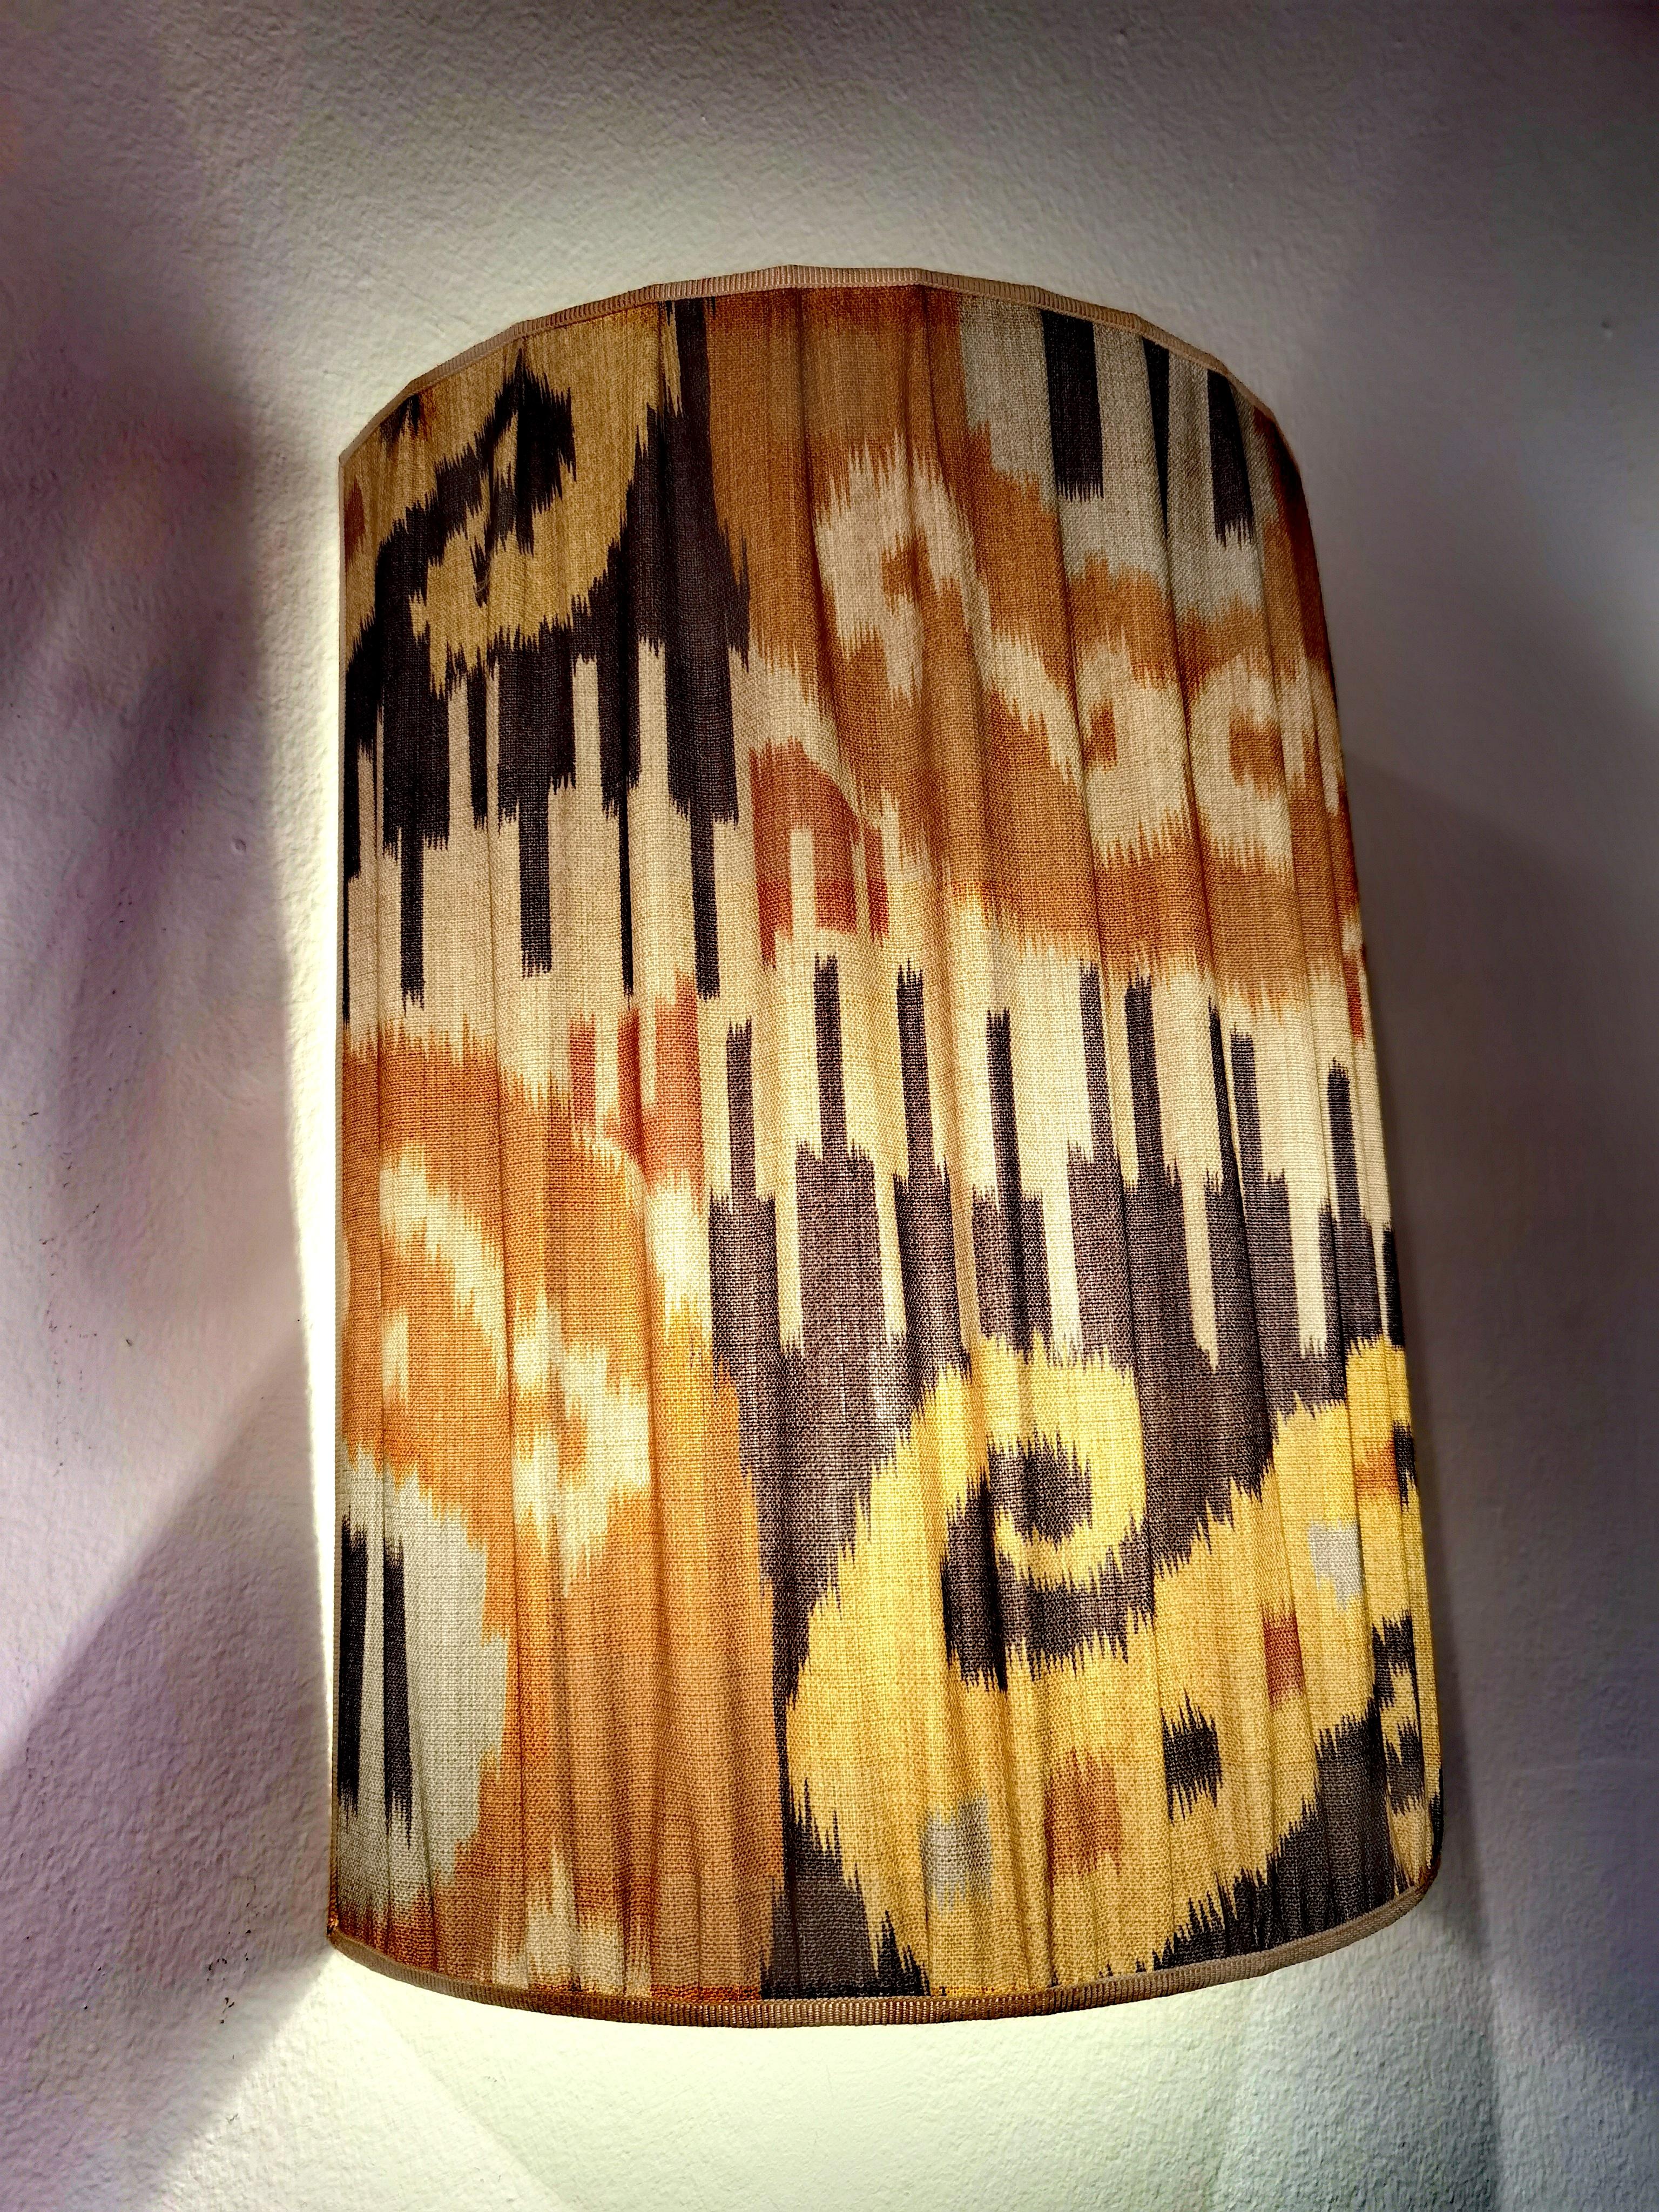 Paire d'abat-jour faits à la main, de style rustique, en tissu de coton à motif Ikat, de couleur marron et gris. Plissé et fabriqué à la main en Autriche.
Encadré d'un paspol fait main en soie beige. Des cornières en fer fabriquées à la main pour